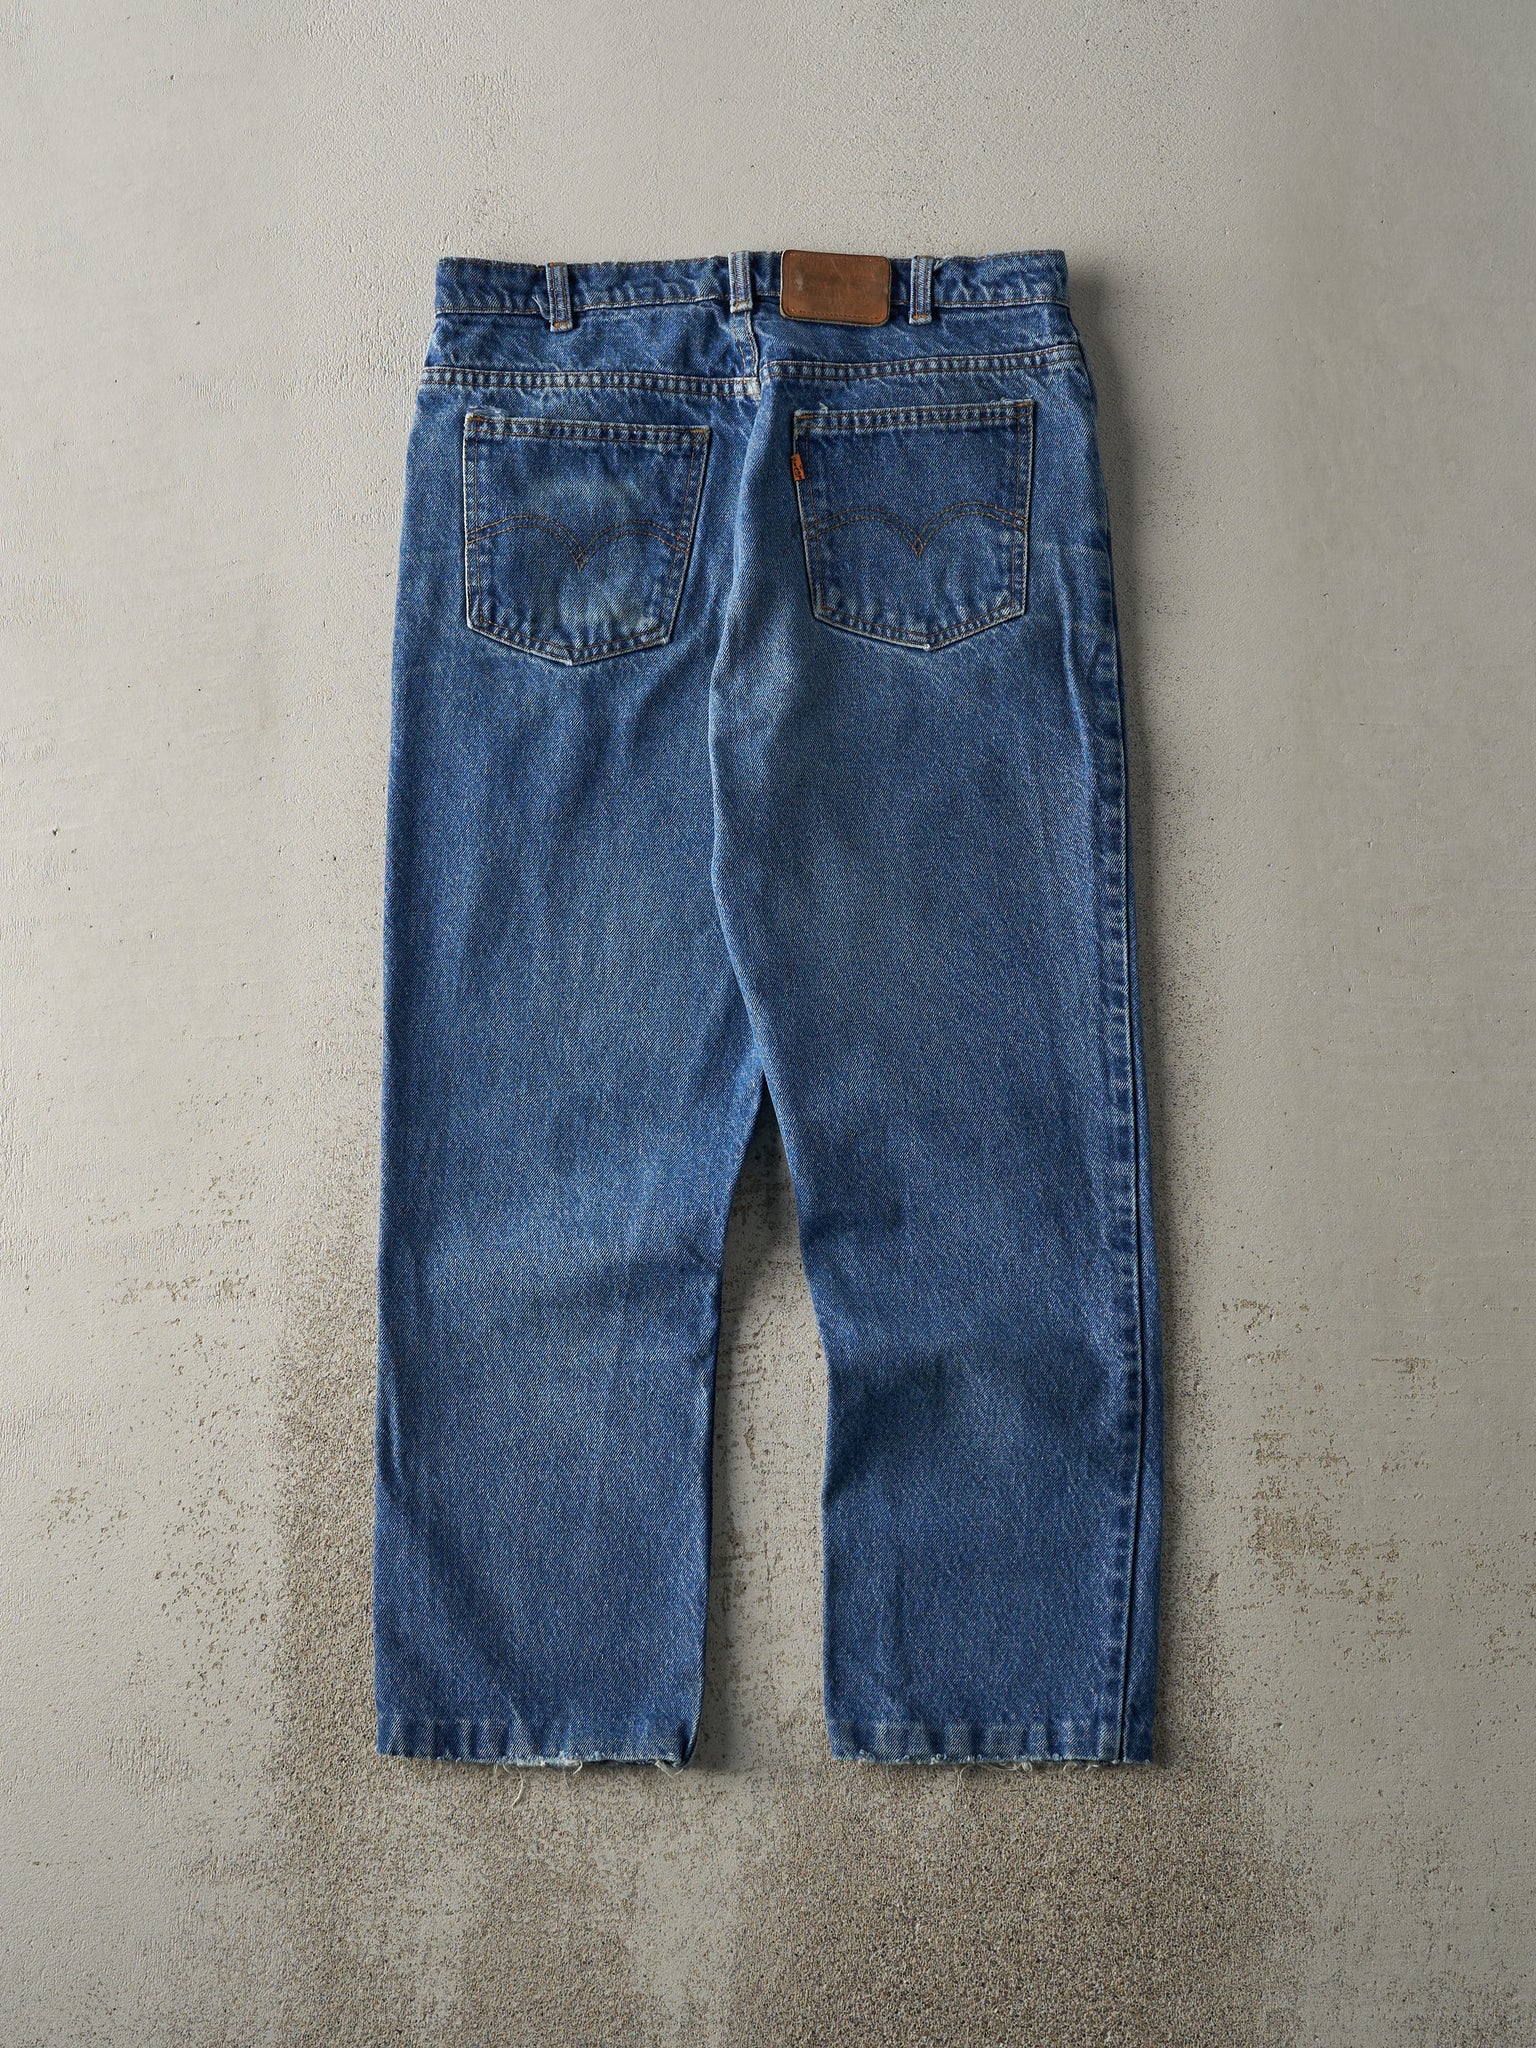 Vintage 80s Mid Wash Levi's Orange Tab 619 Jeans (32x27)